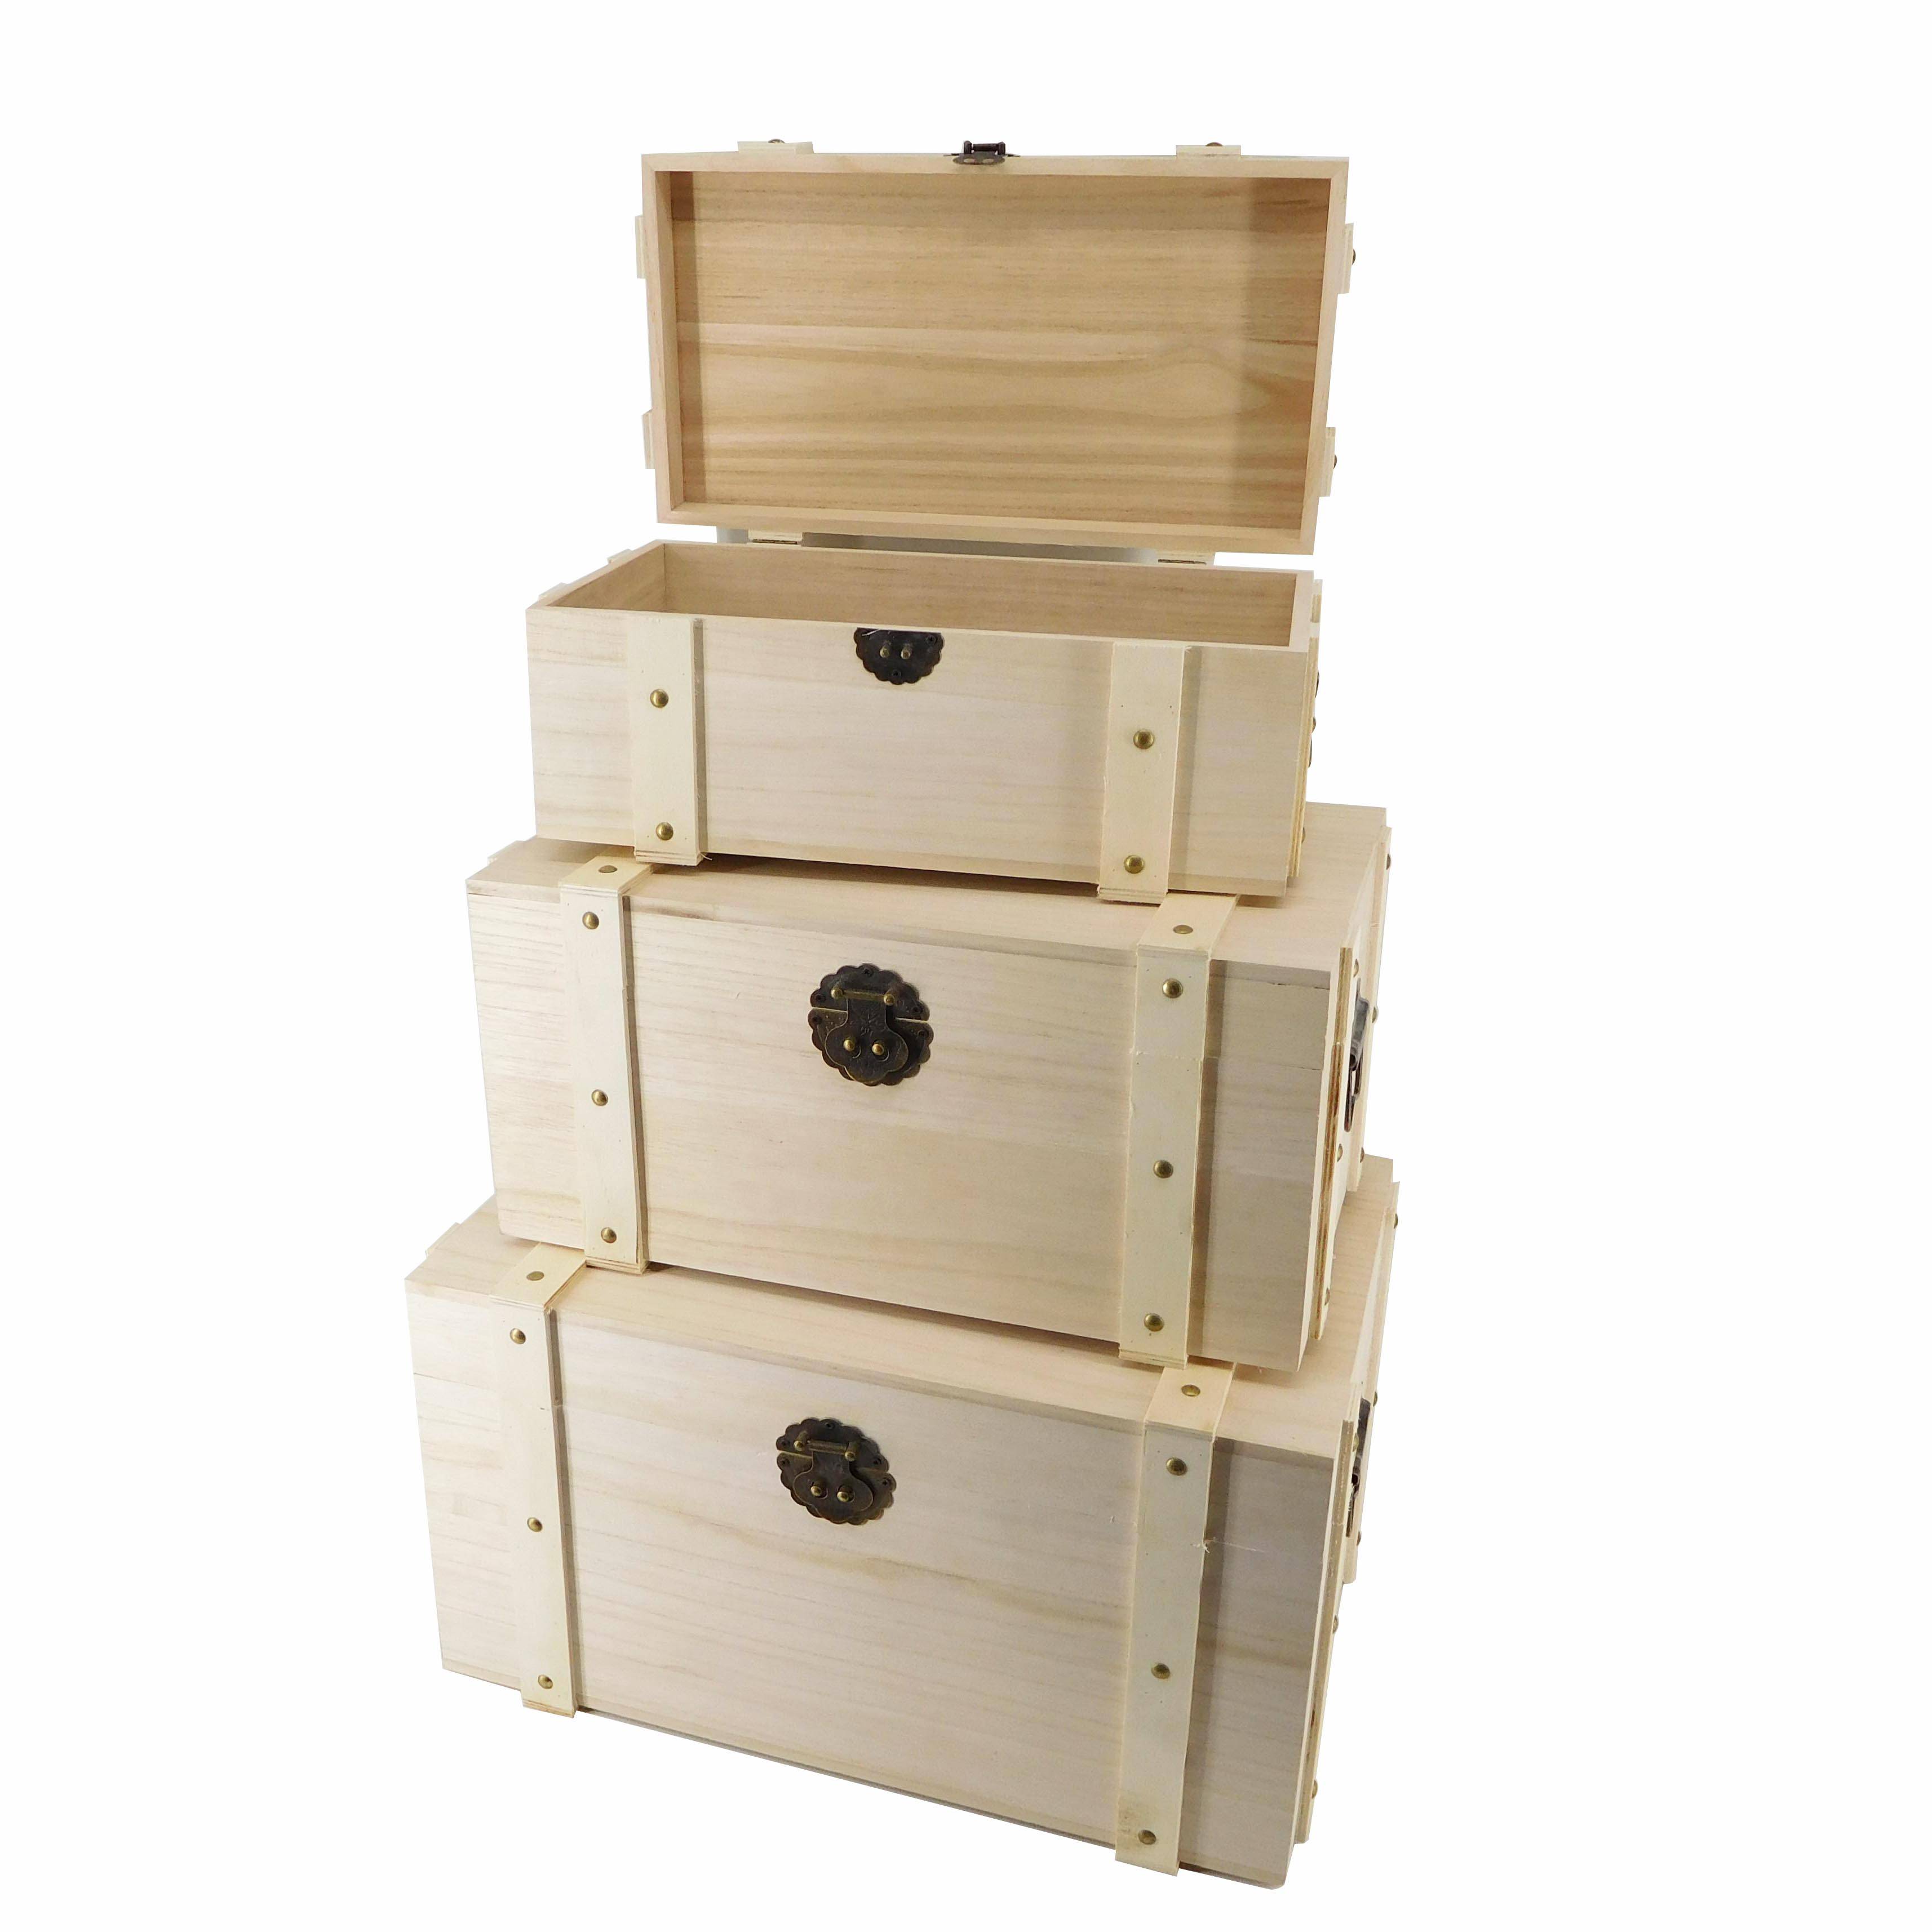 Fa'atau oloa Si'osi'omaga Antique WoodenTrunk Box Wooden Storage Box